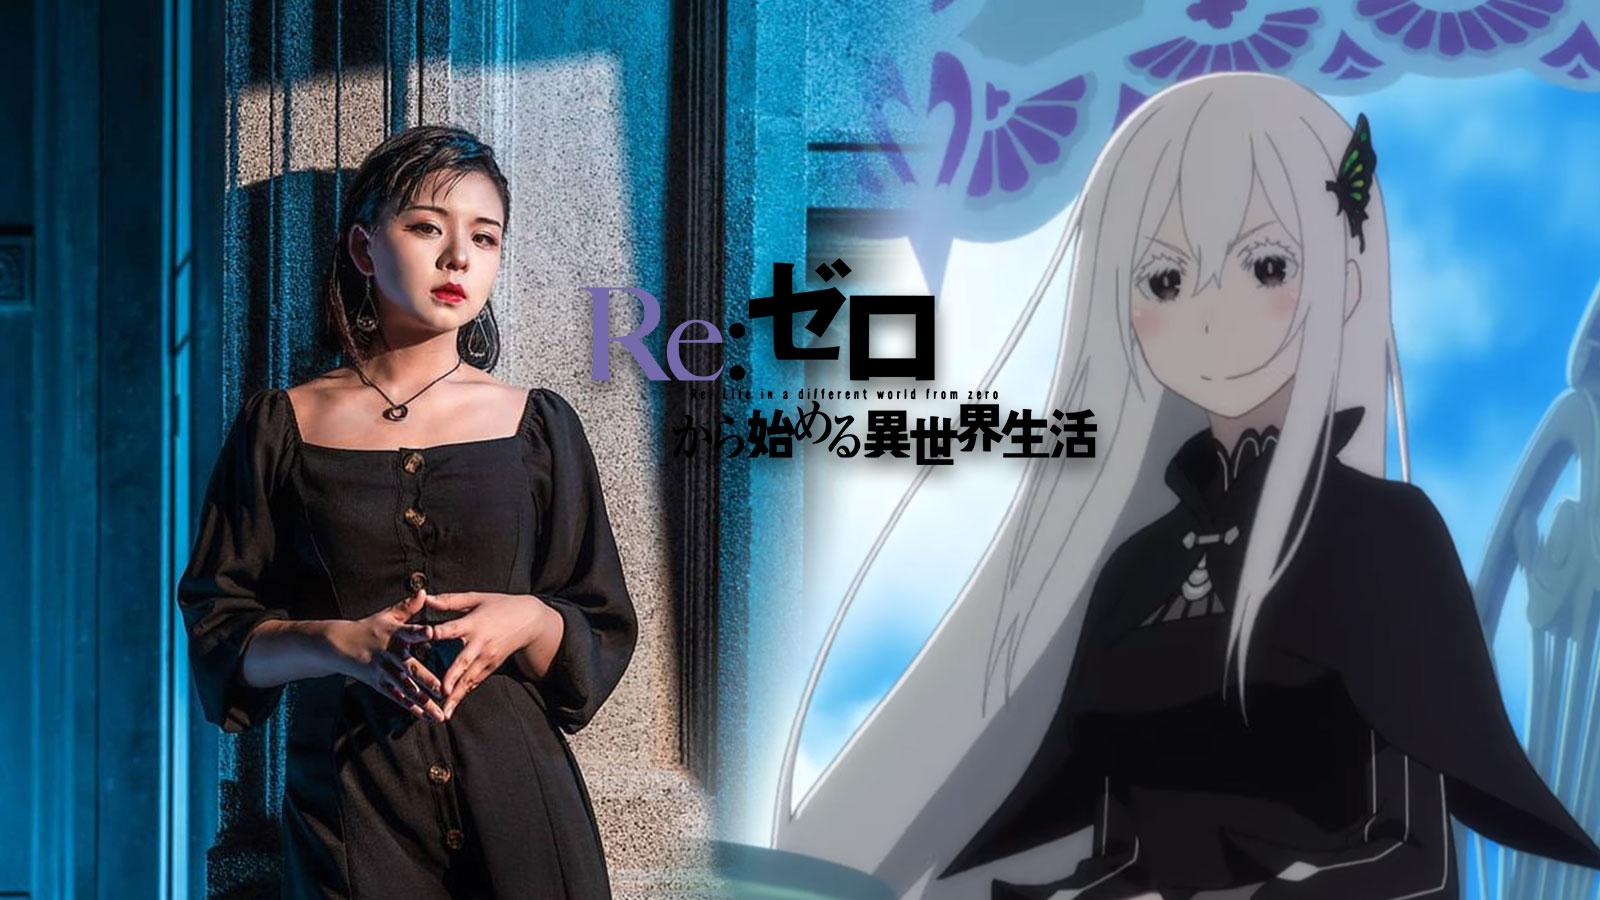 Un cosplay envoûtant d'Echidna dans Re:Zero subjugue les internautes